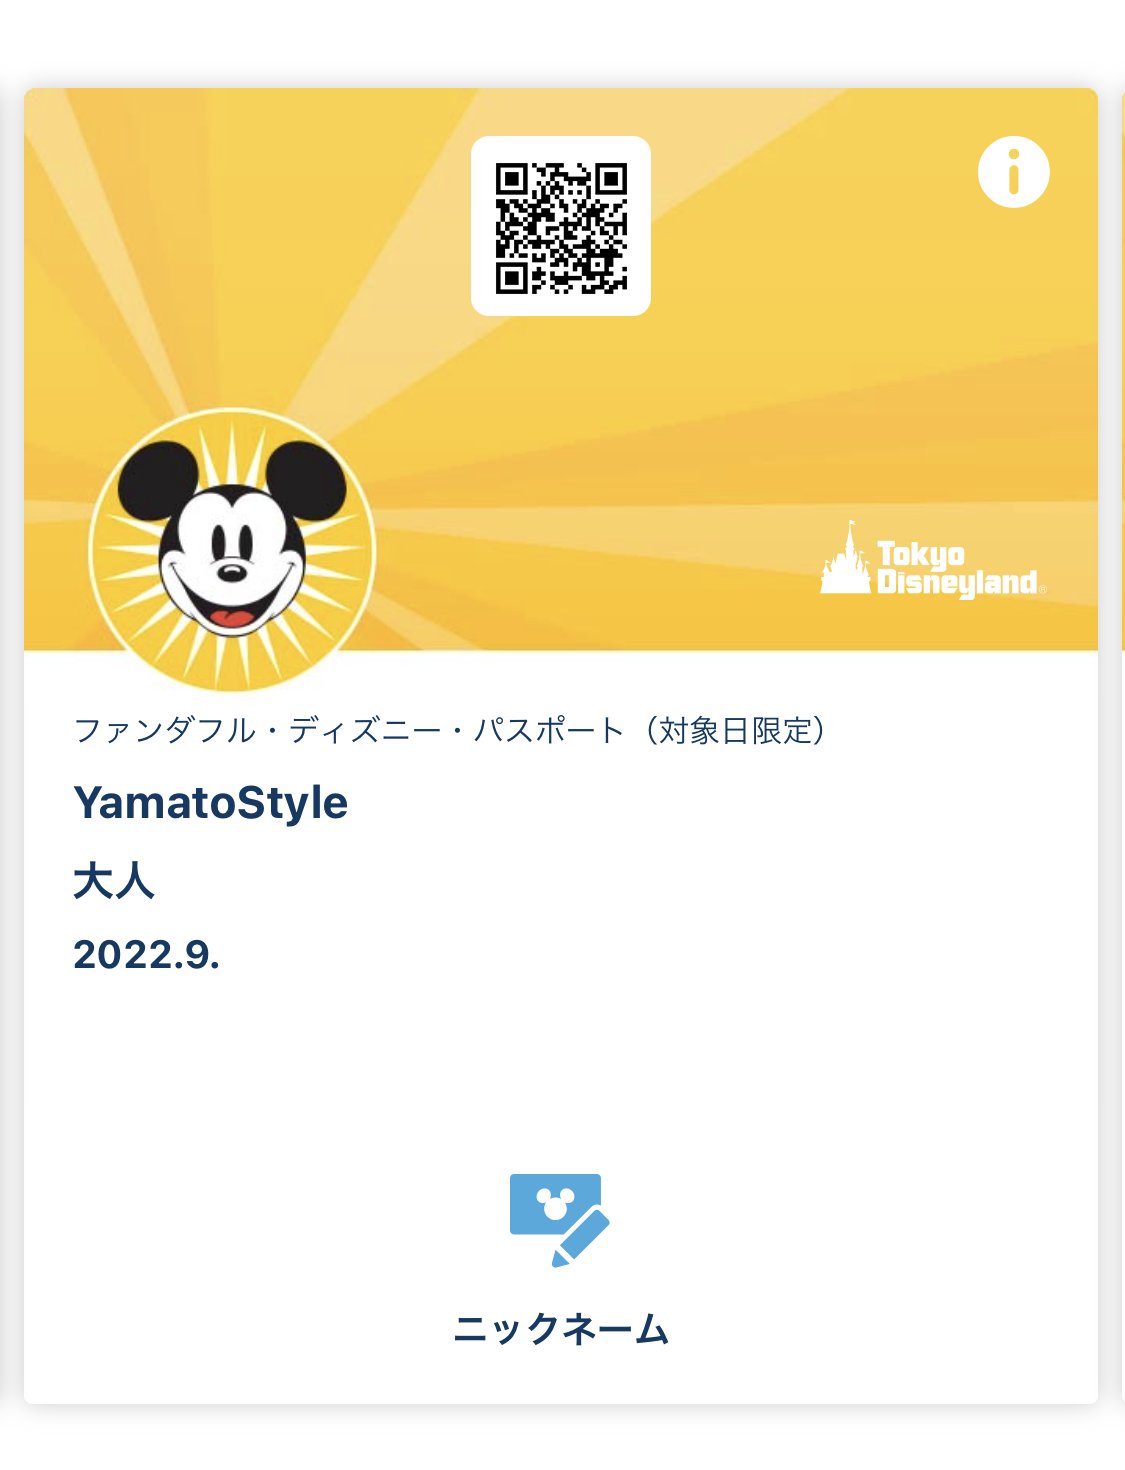 Yamatostyle ファンダフル ディズニー パスポートなら平日1 000円お得 本日より販売開始 チケットも可愛い T Co Ufqyj1lsyt T Co 3plsp3nnpm Twitter